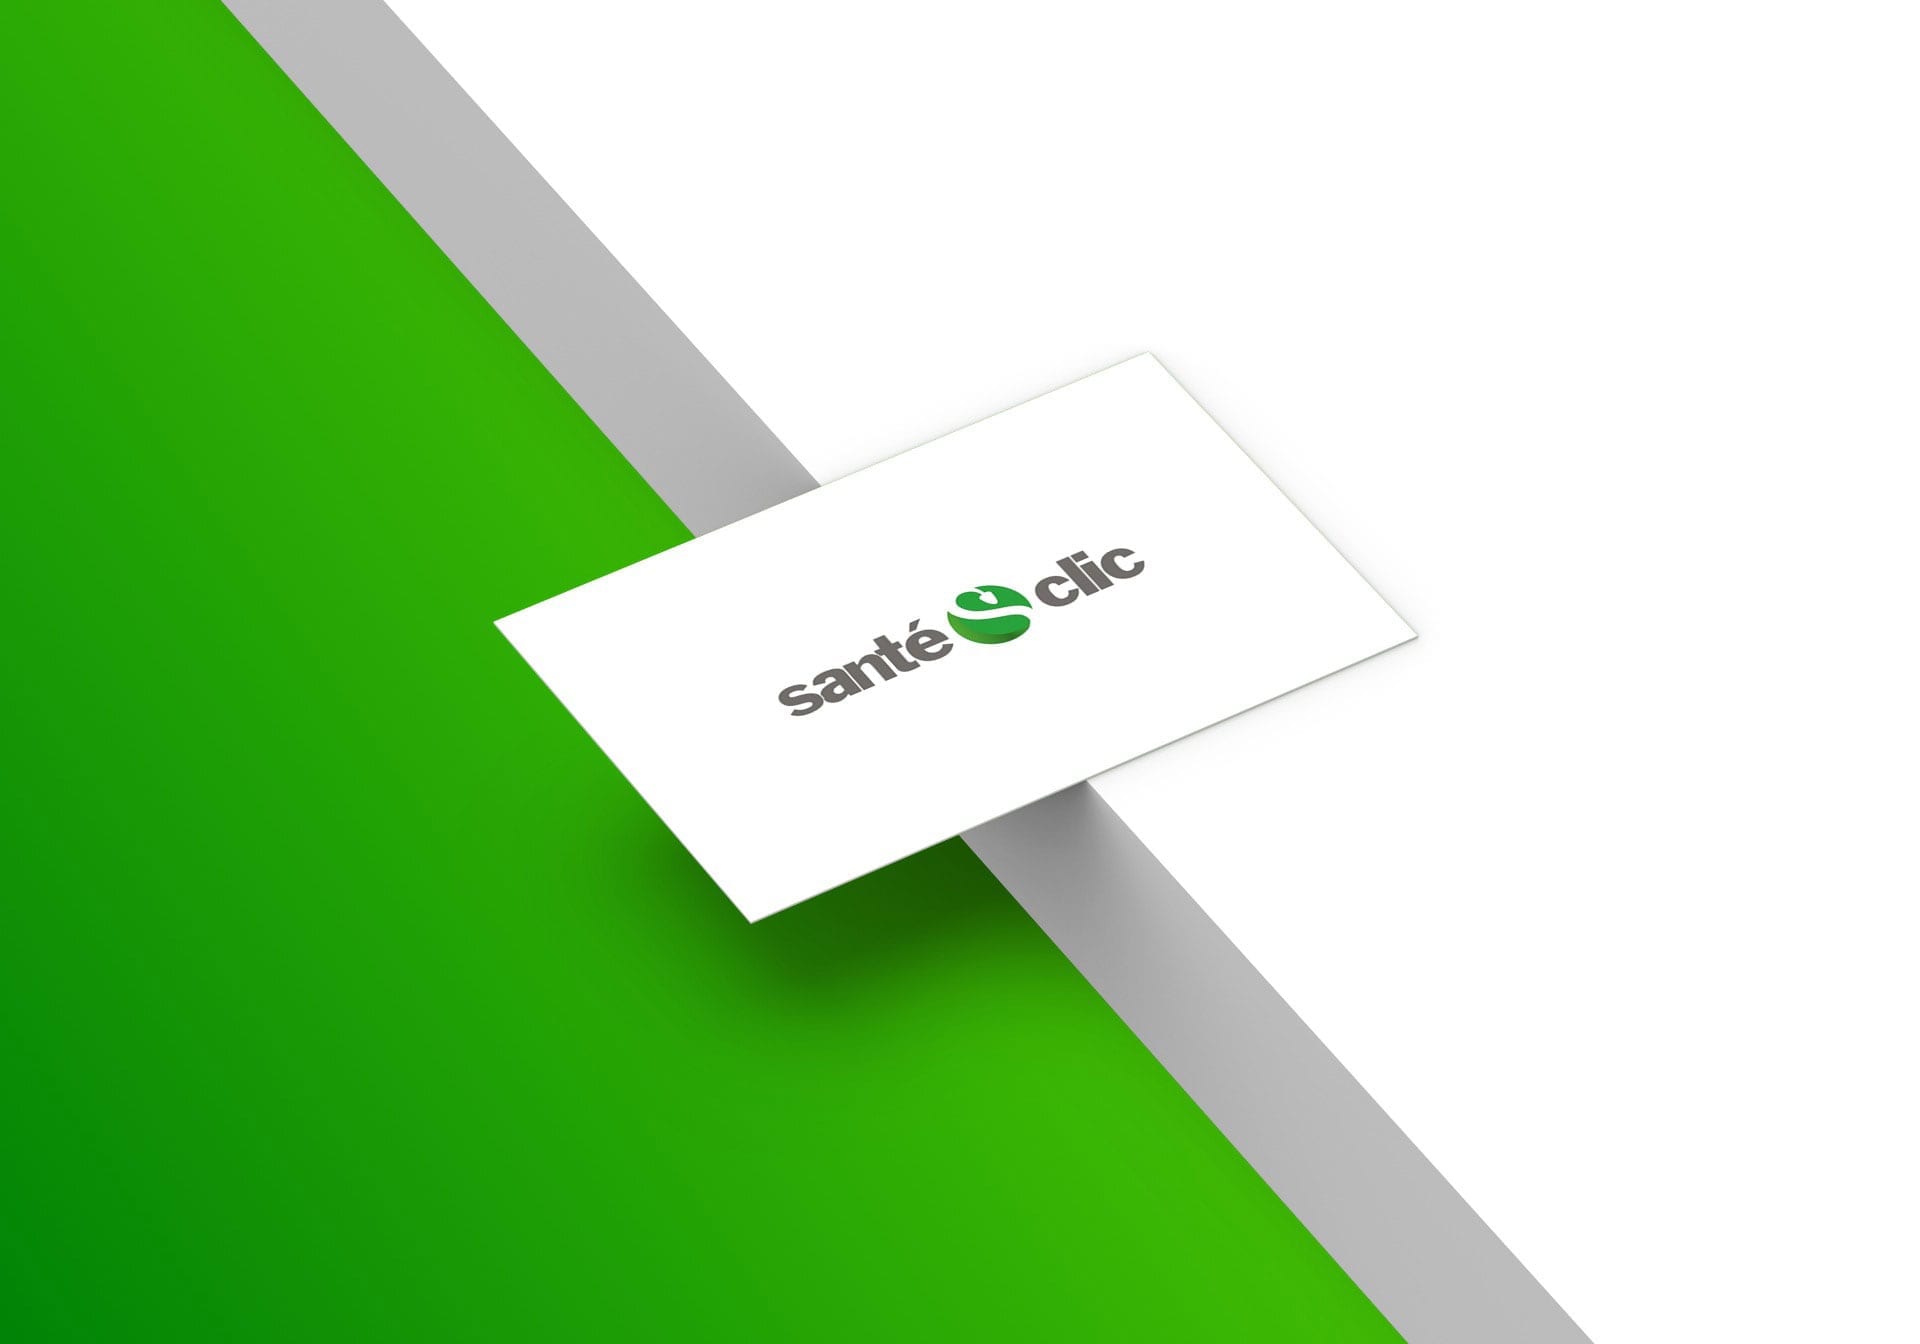 Logo de Santeclic.com